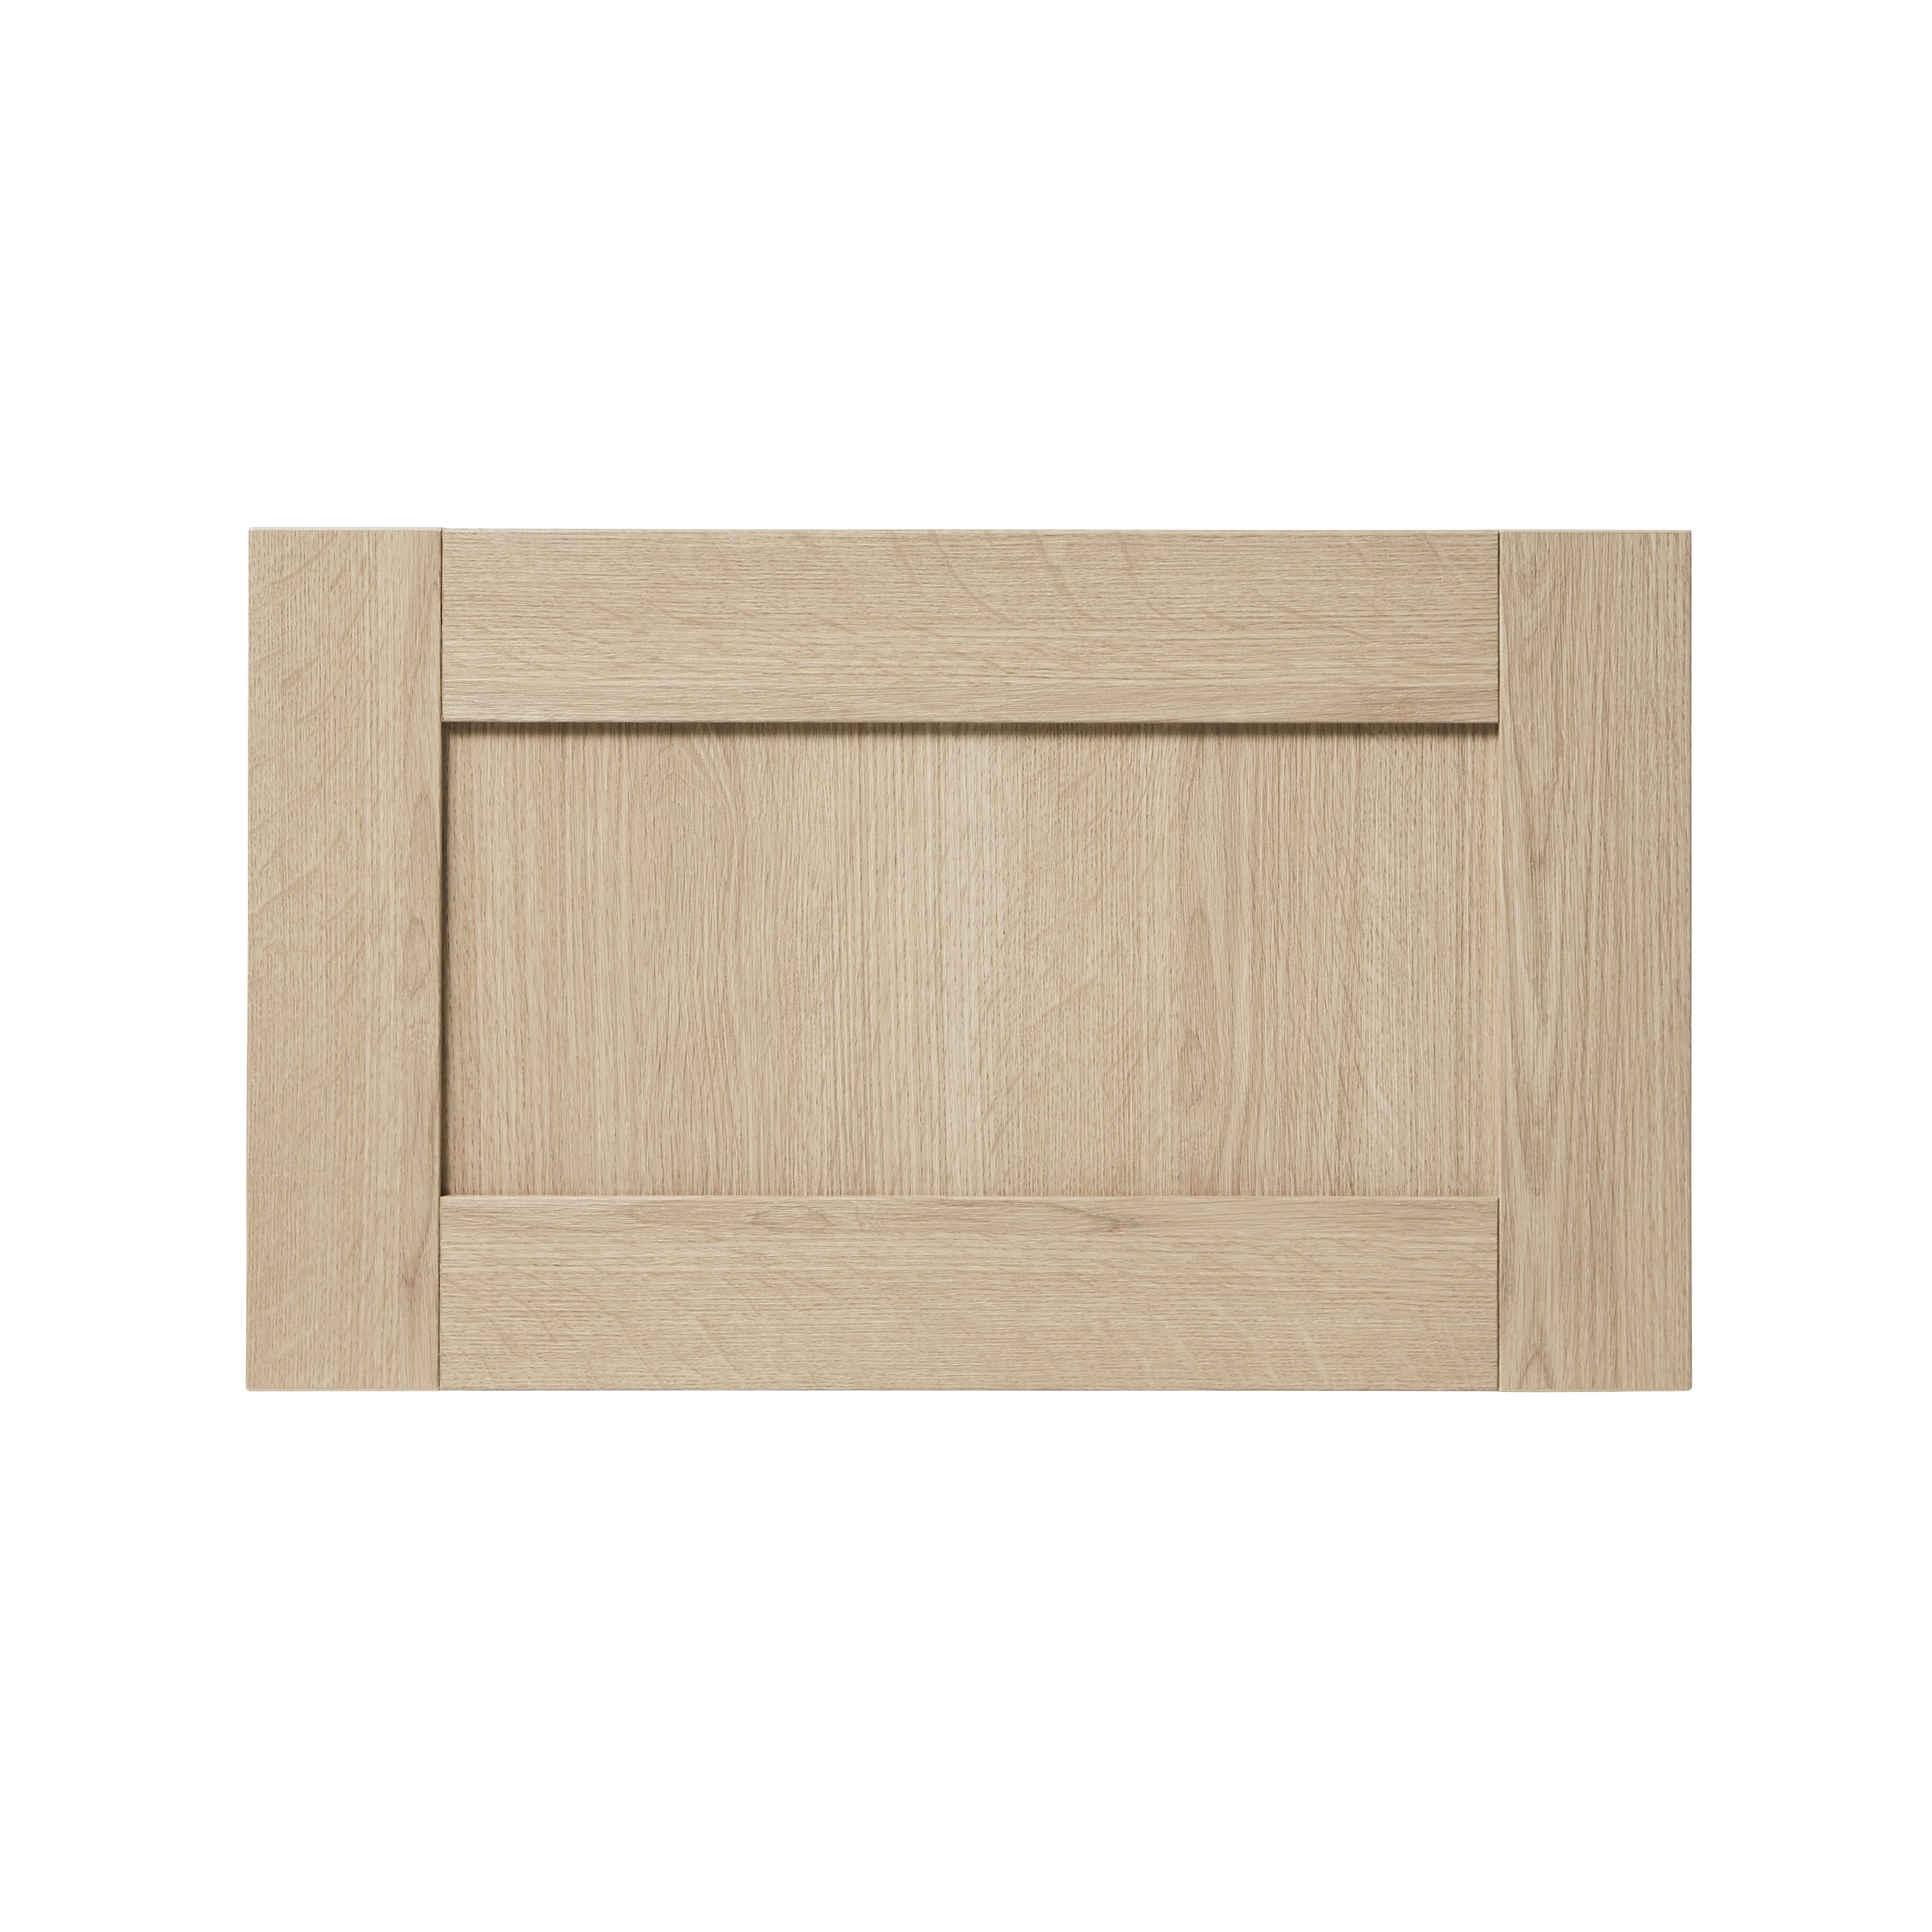 GoodHome Alpinia Oak effect shaker Drawer front, bridging door & bi fold door, (W)600mm (H)356mm (T)18mm